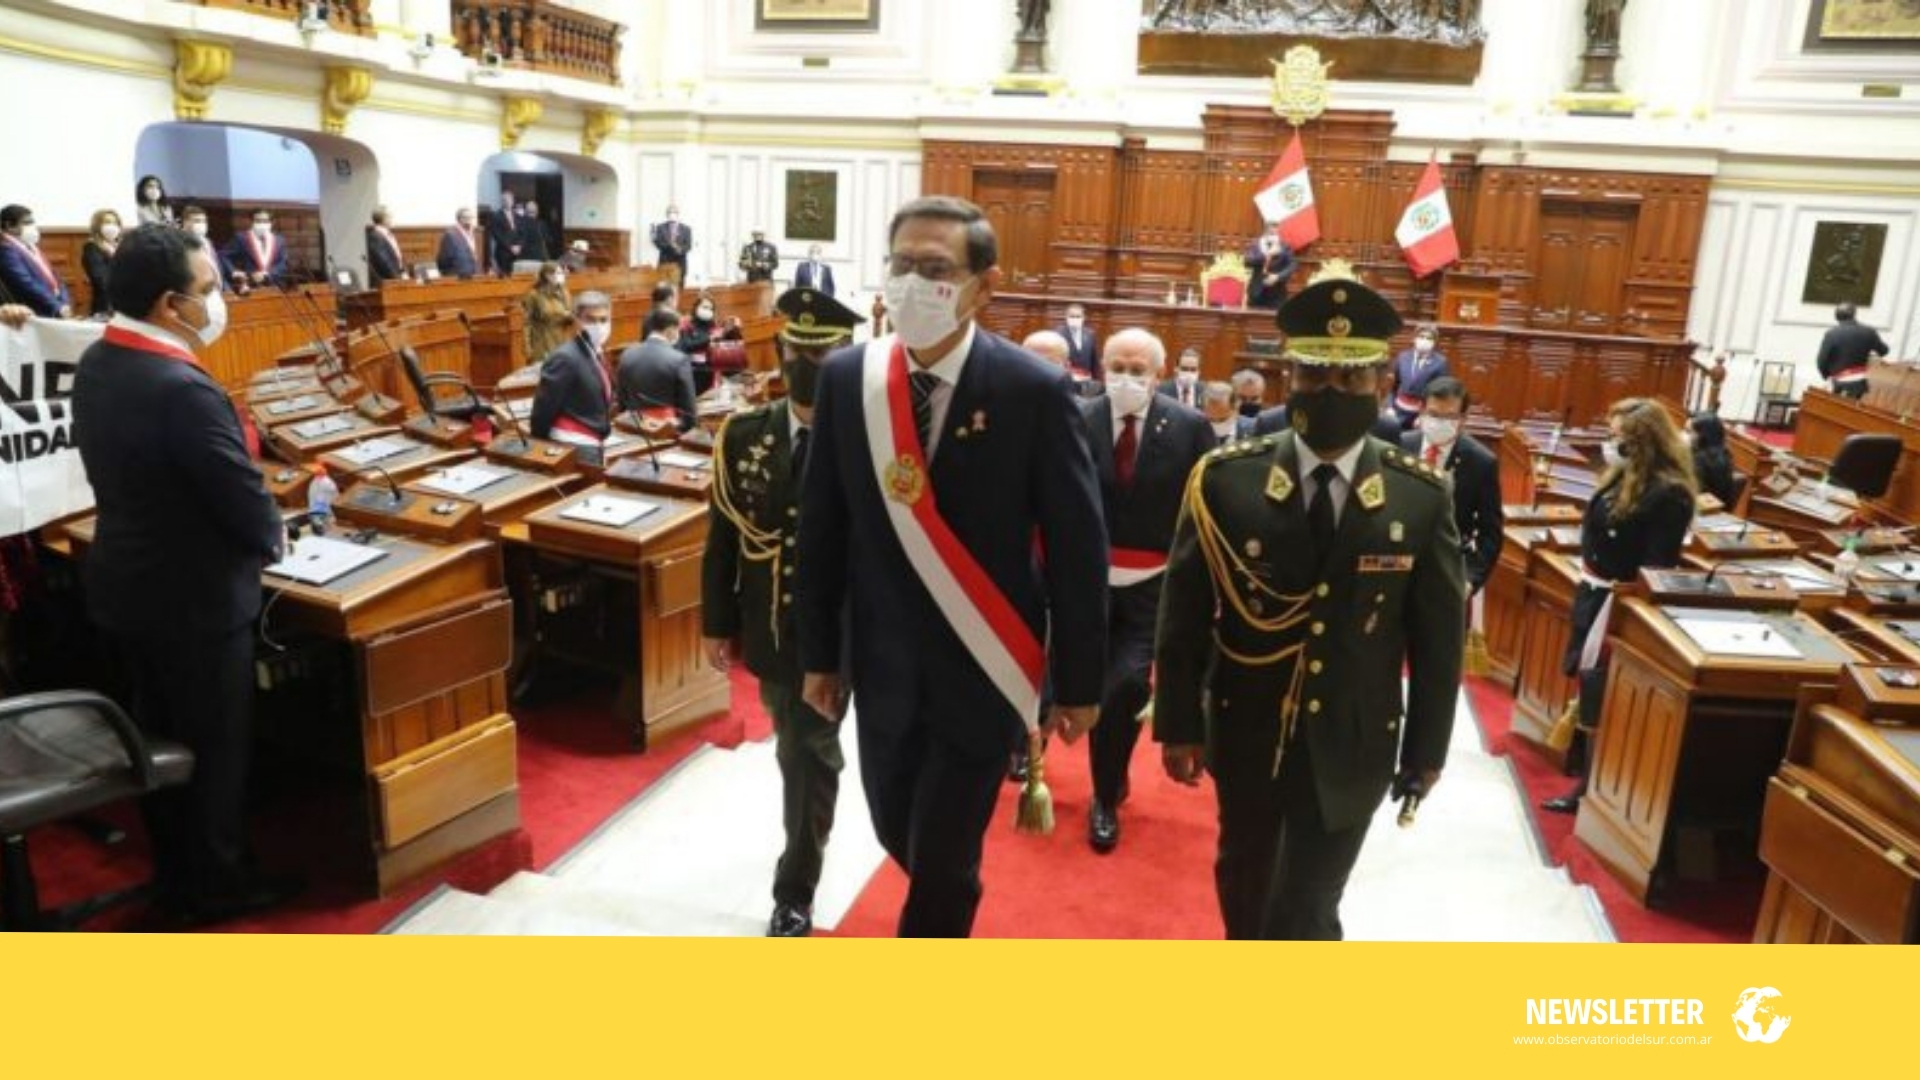 Perspectiva Latinoamericana | Perú entre la pandemia y la disputa política